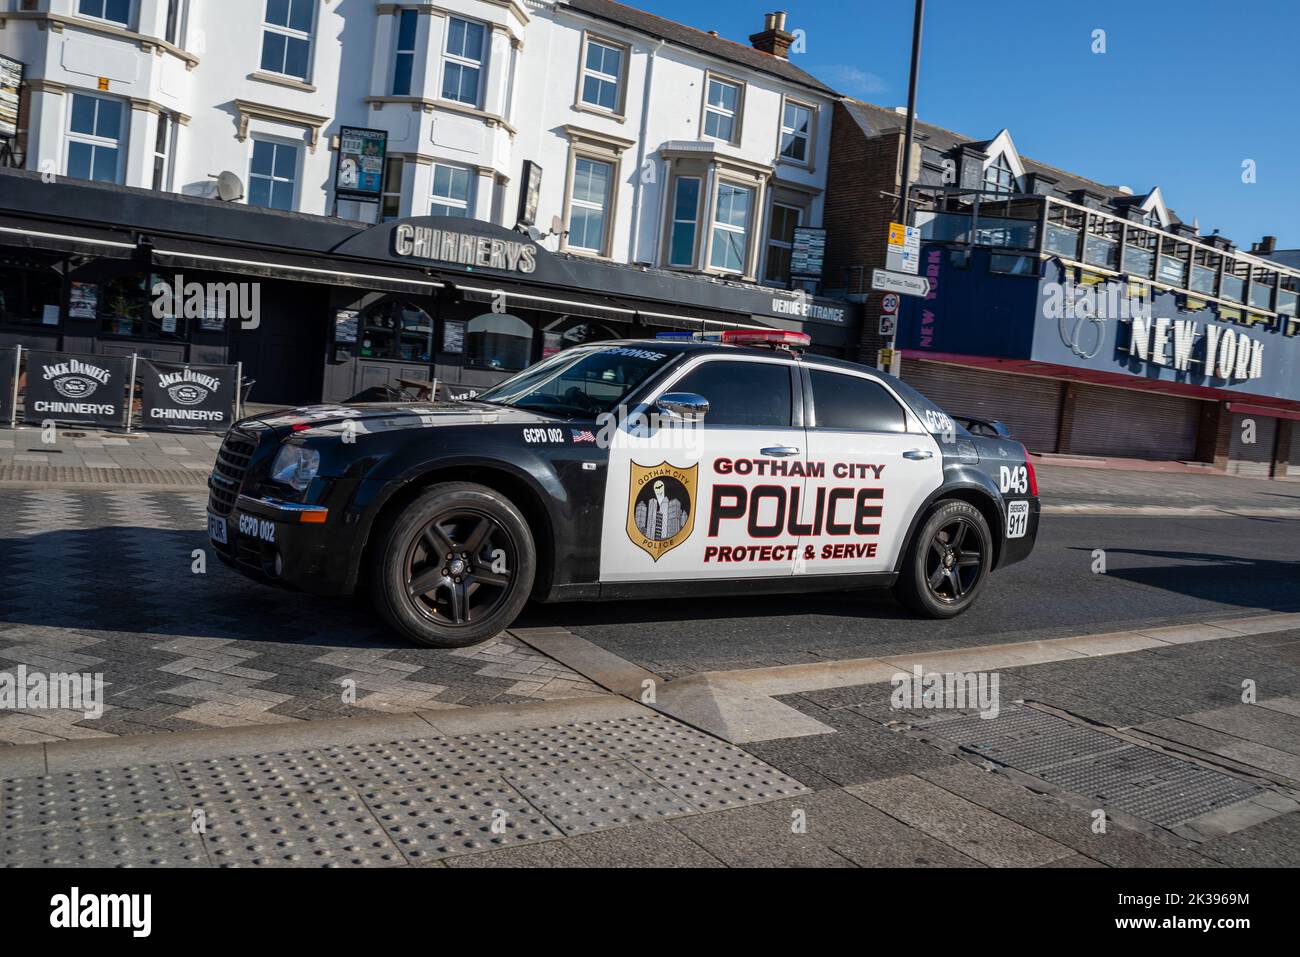 La voiture de police de Gotham City a marqué Chrysler 300 lors de la Marine Parade à Southend on Sea, Essex, Royaume-Uni. Texte Protect & serve. En passant par la salle de jeux de New York Banque D'Images